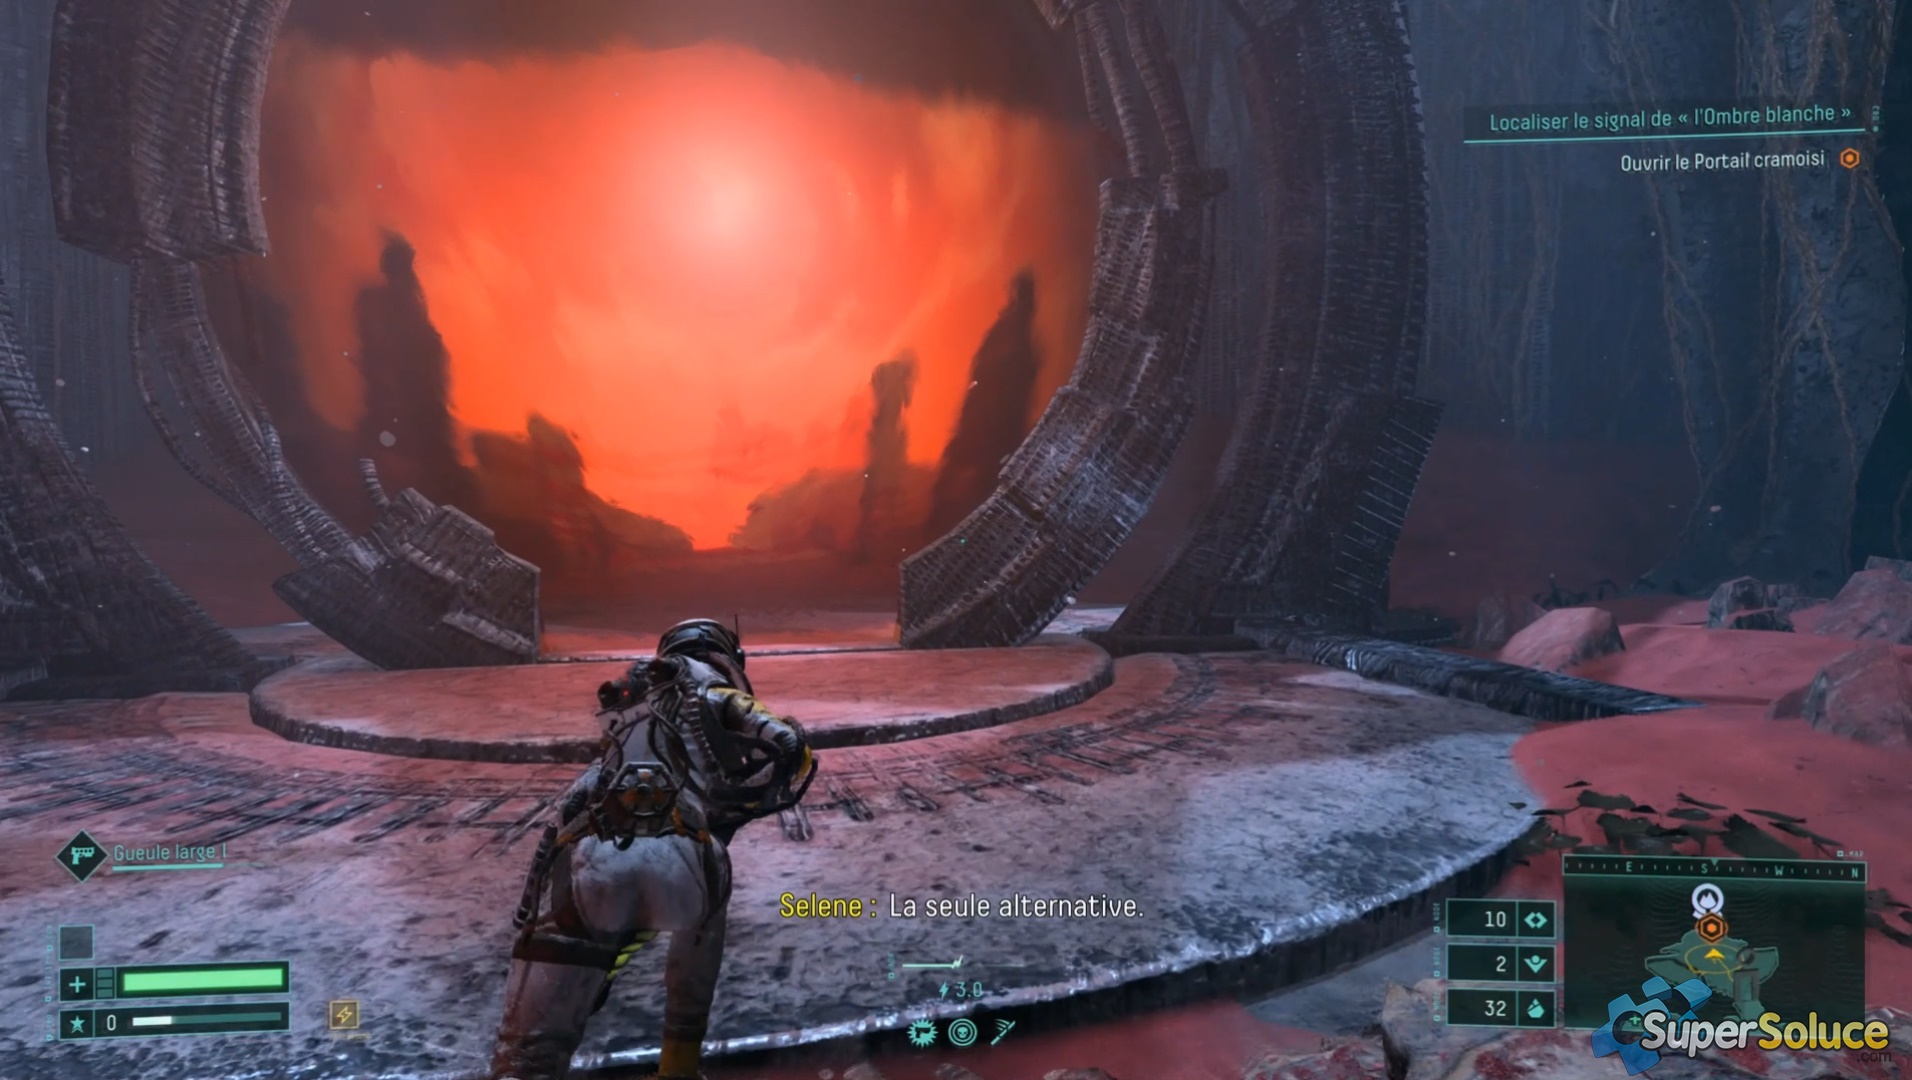 A nivel estético el juego logra conseguir una atmosfera de terror espacial que recuerda mucho a Alien.